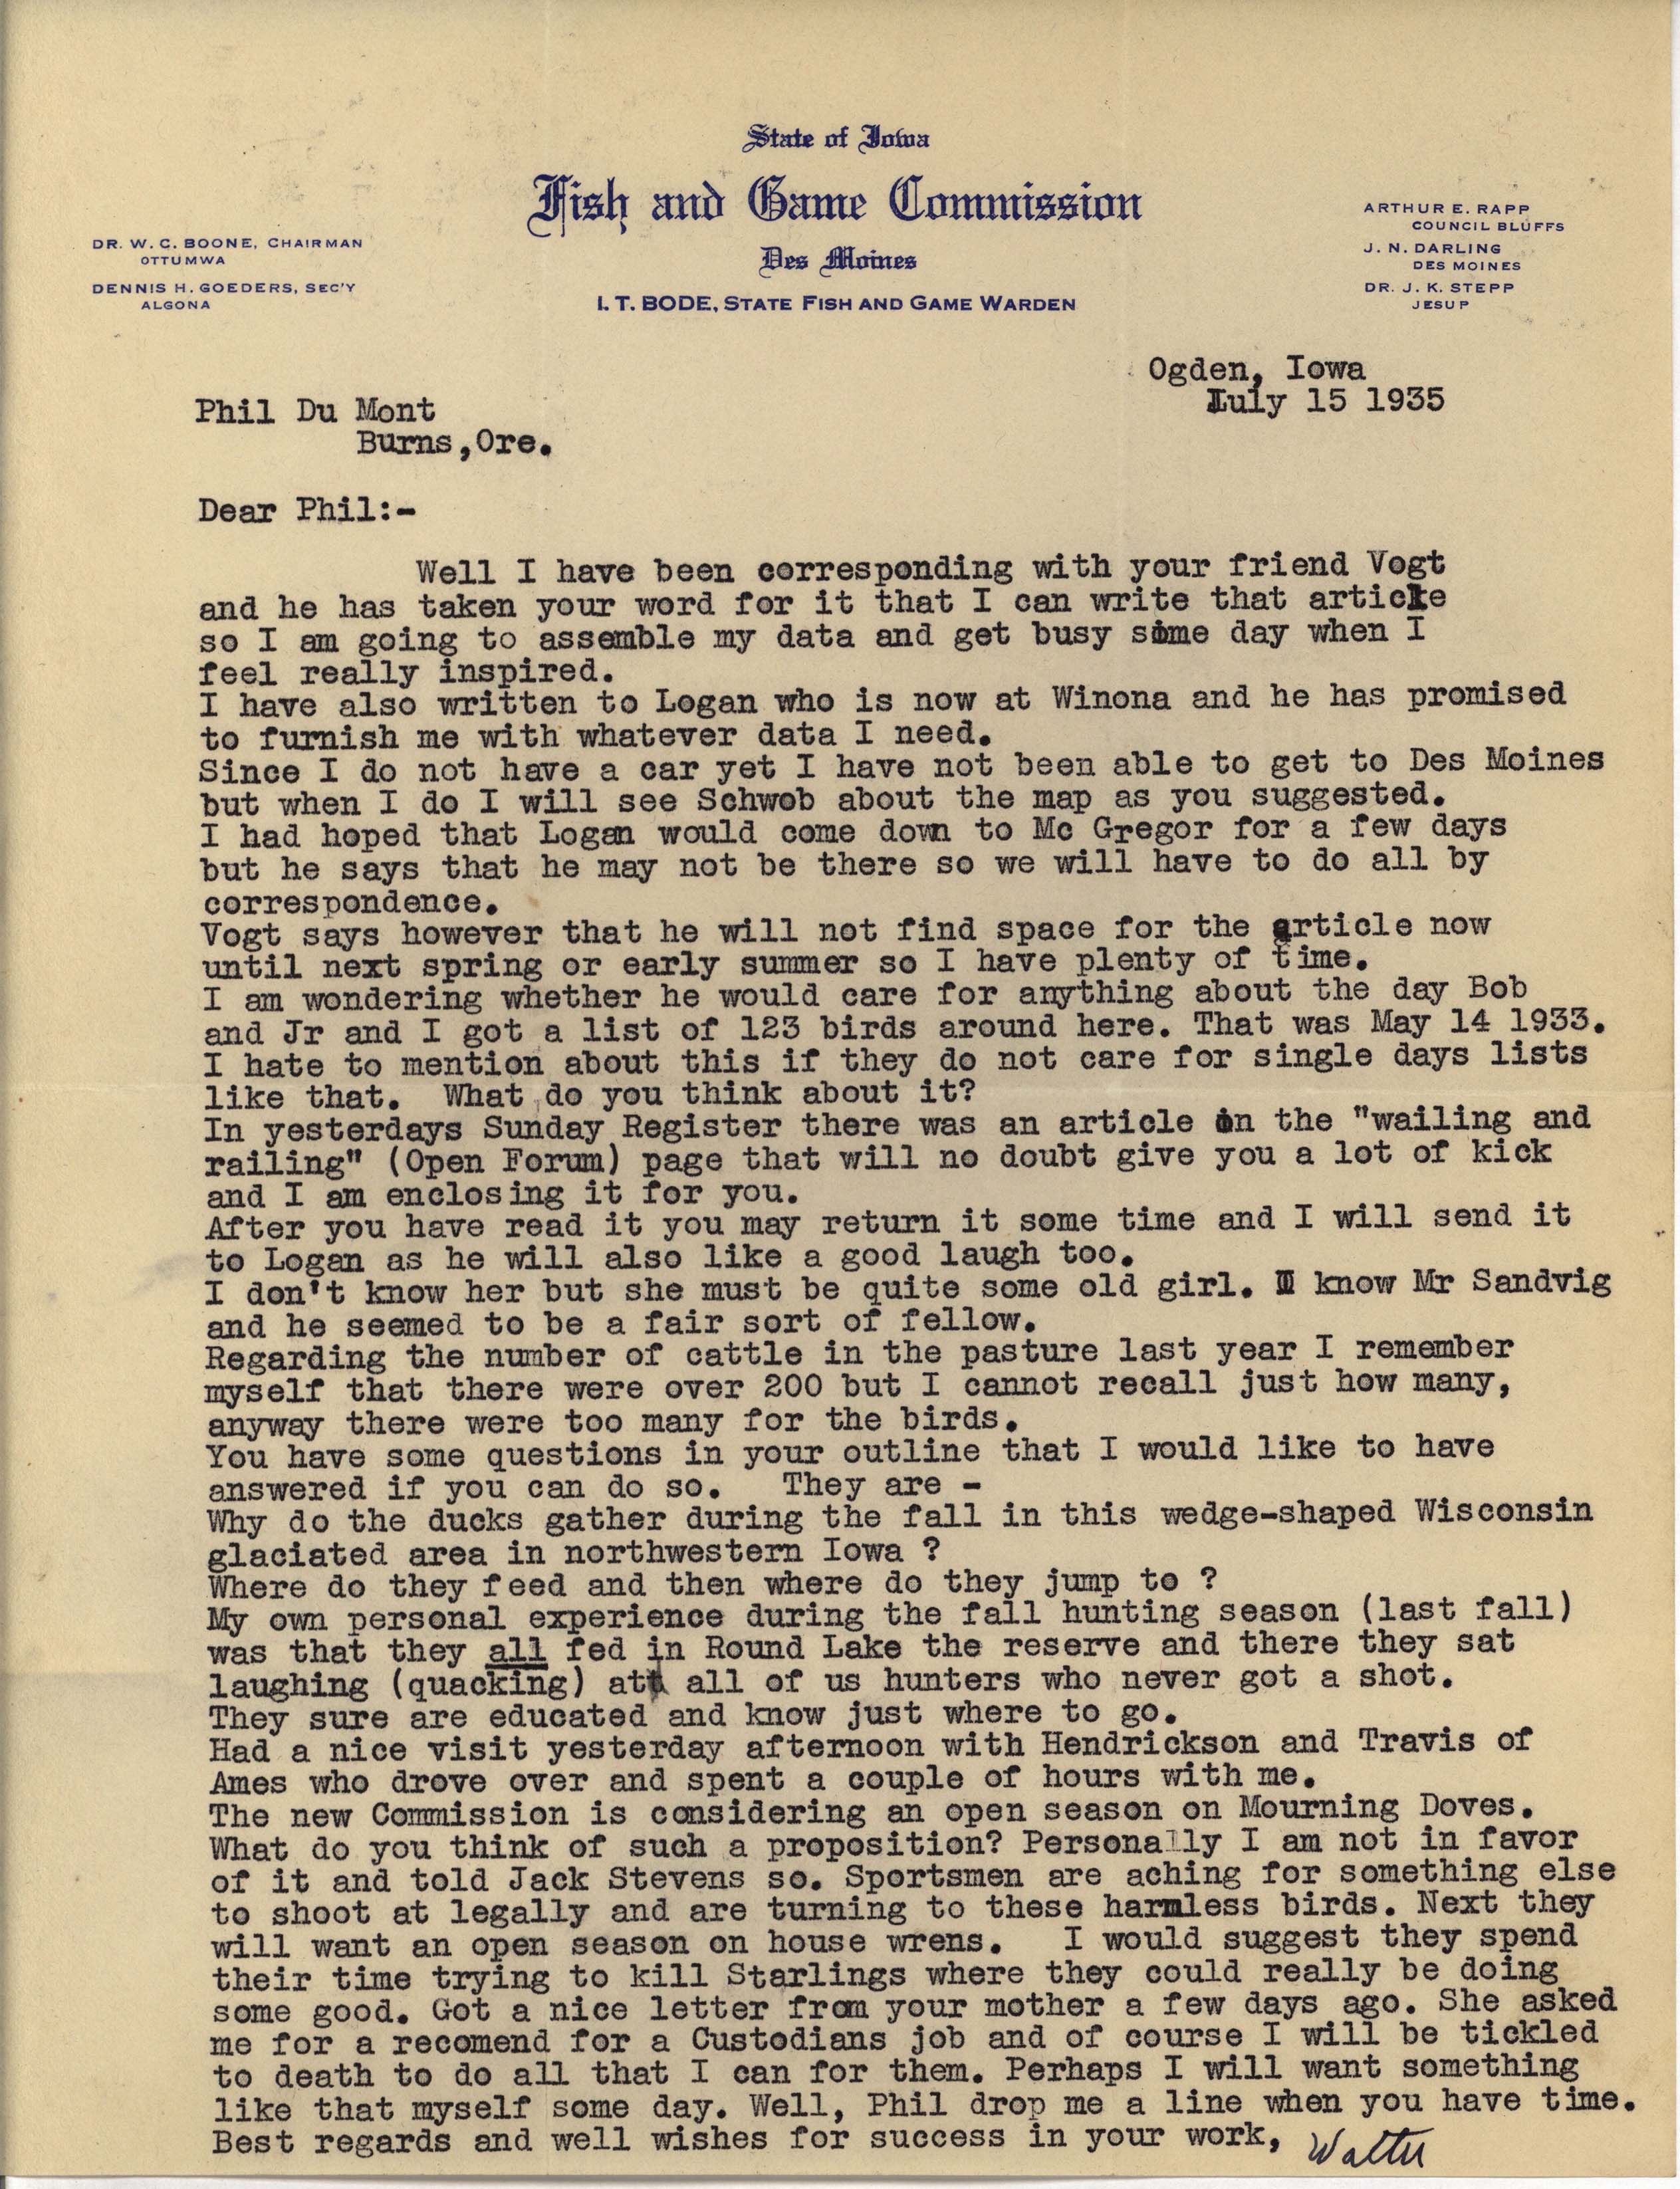 Walter Rosene letter to Philip DuMont regarding article writing, July 15, 1935